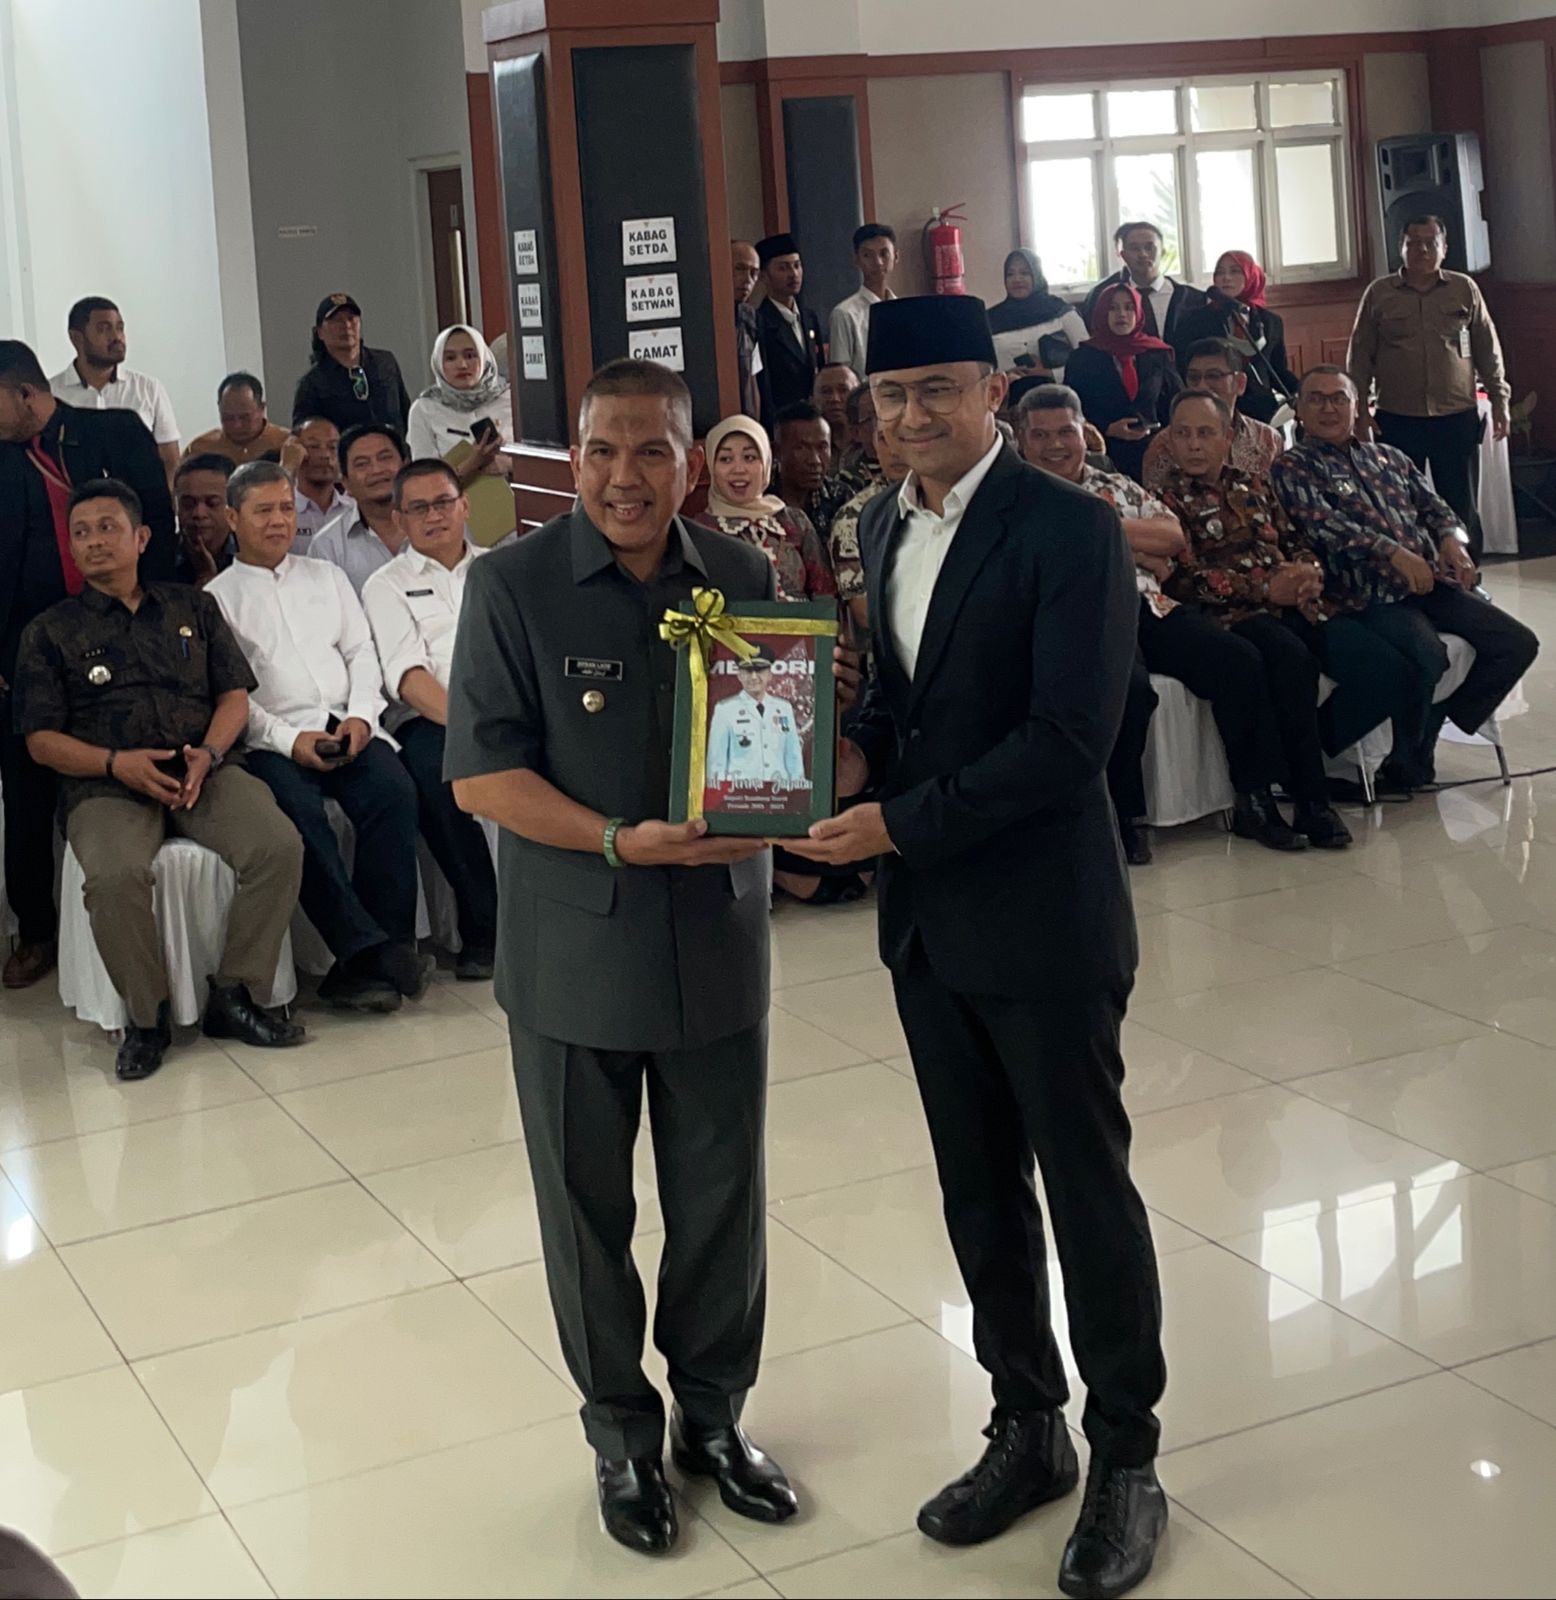 Hengky Kurniawan saat menyerahkan jabatan sebagai Bupati Bandung Barat kepada Arsan Latif. Rabu (20/9). Foto Jabarekspres